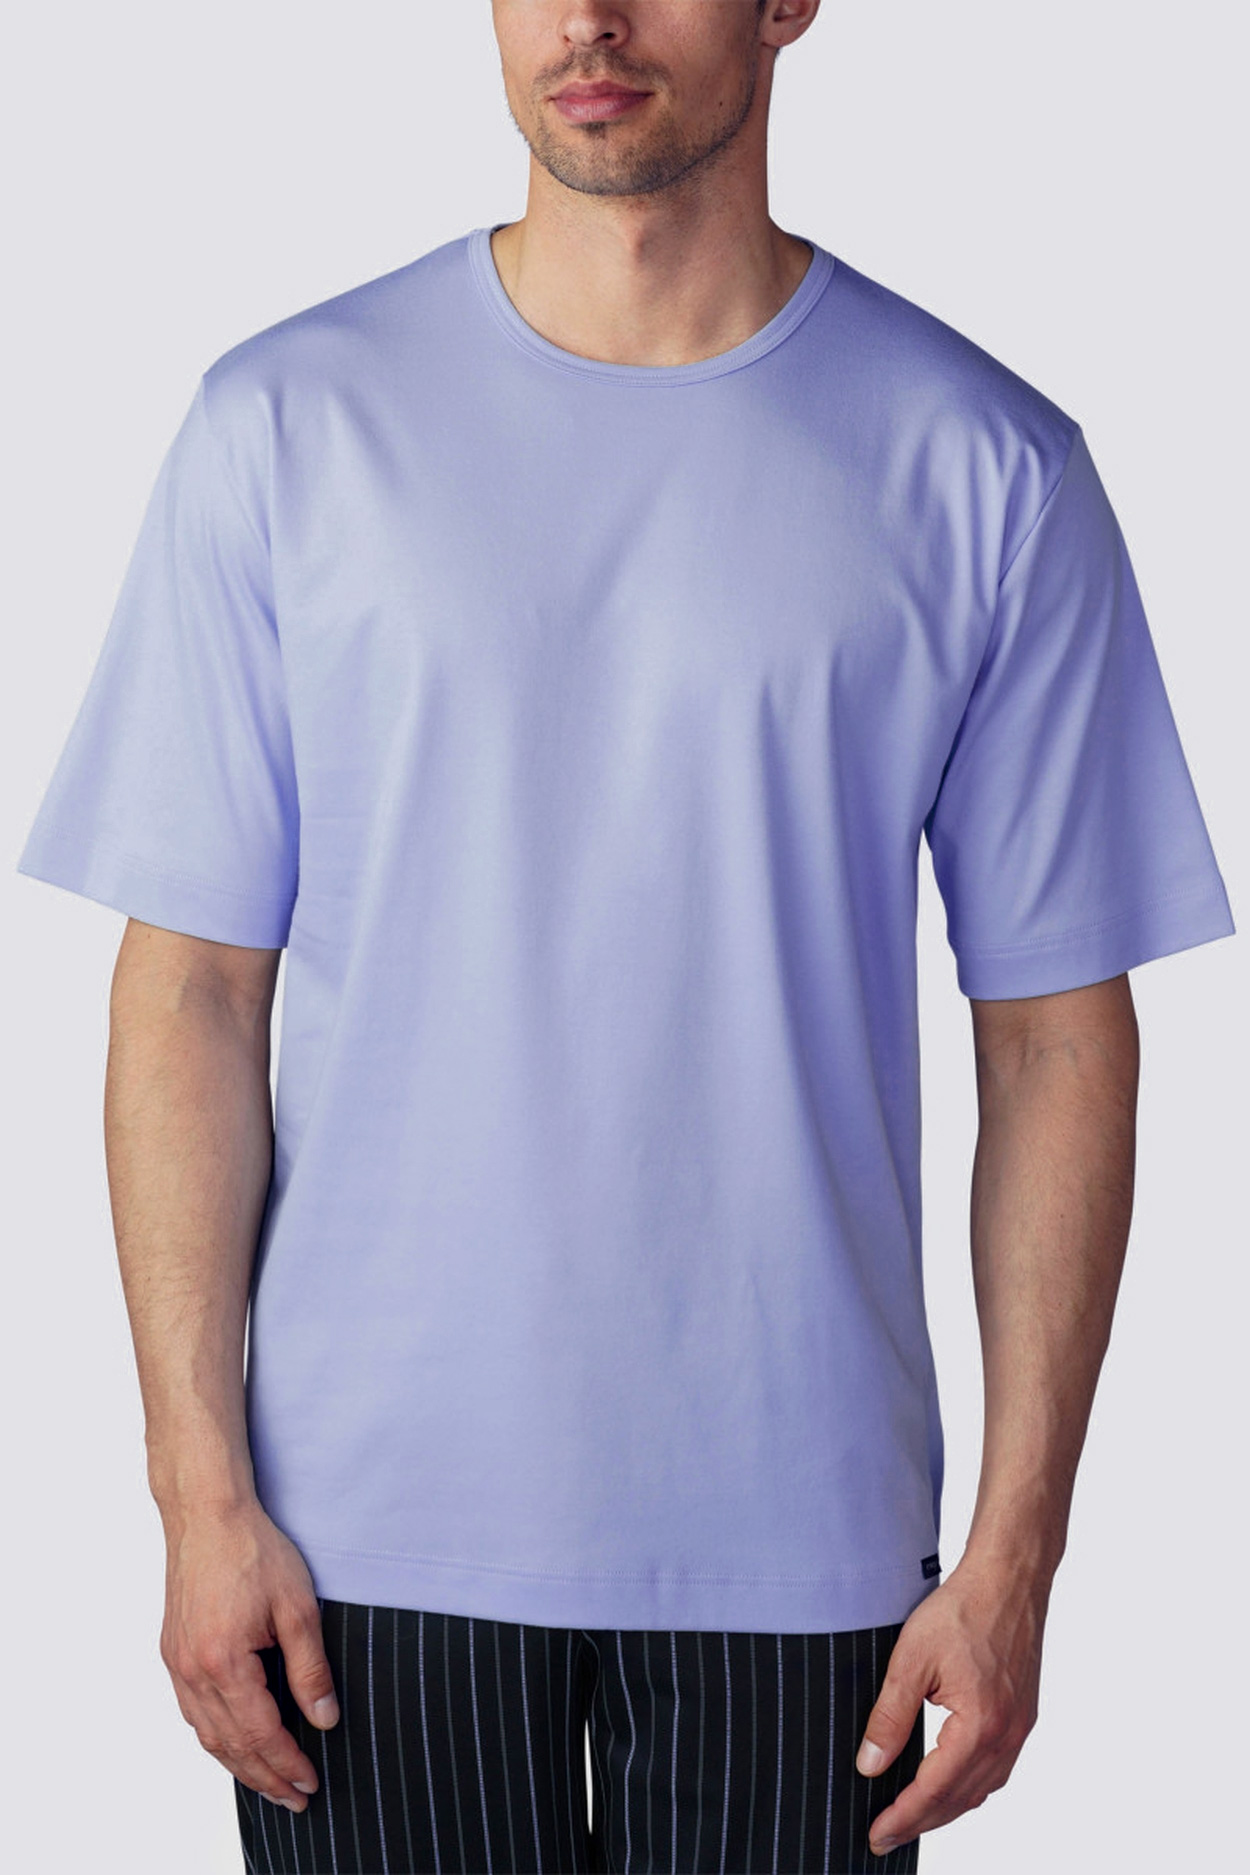 Мужская футболка 20430 голубой Mey рис. 1